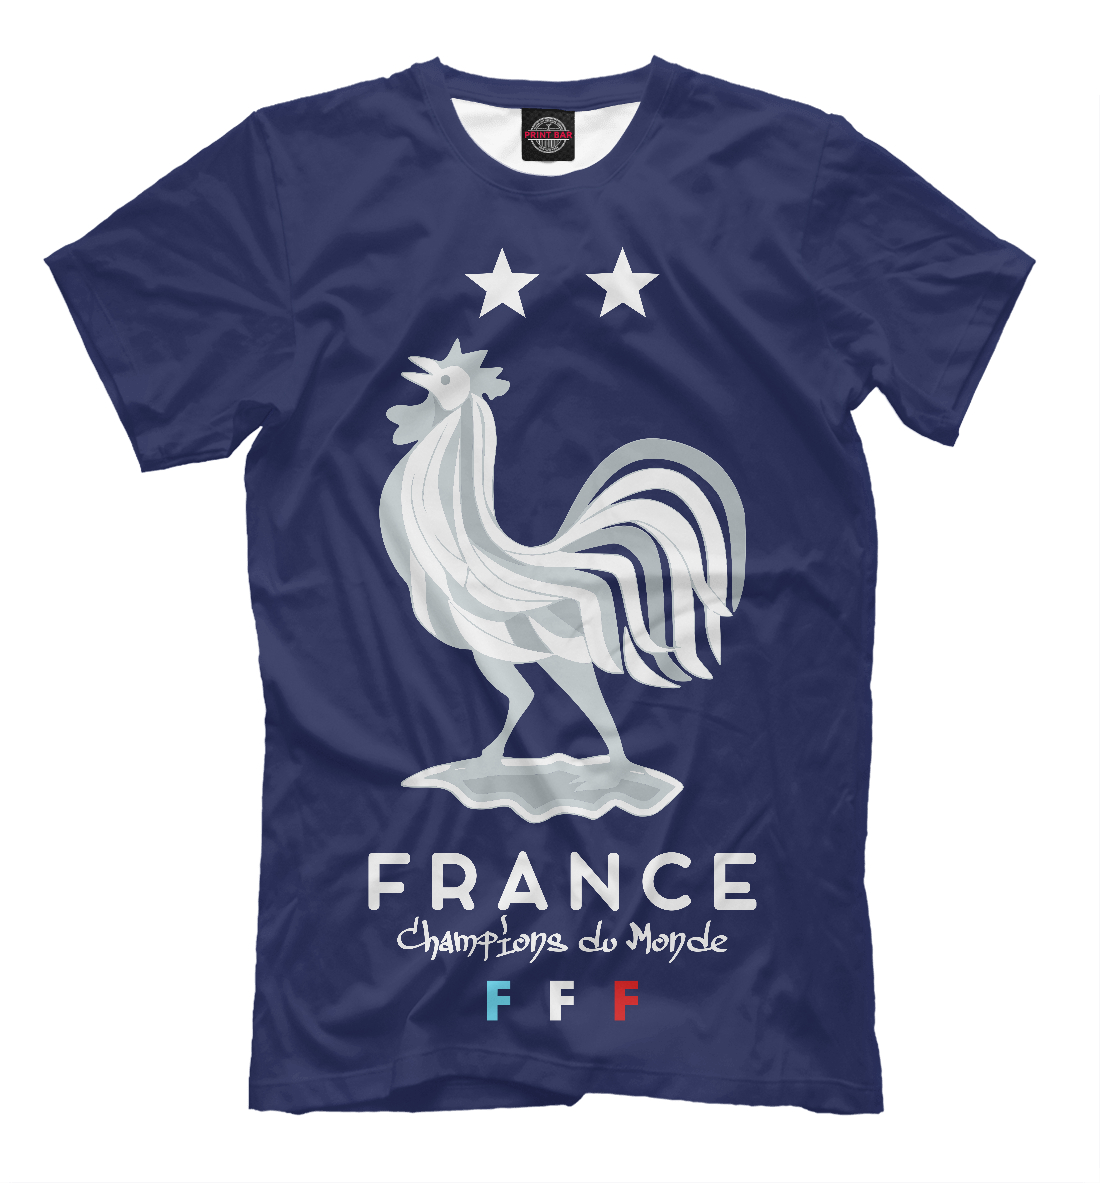 Детская Футболка Сборная Франции для мальчиков, артикул SFC-326194-fut-2mp